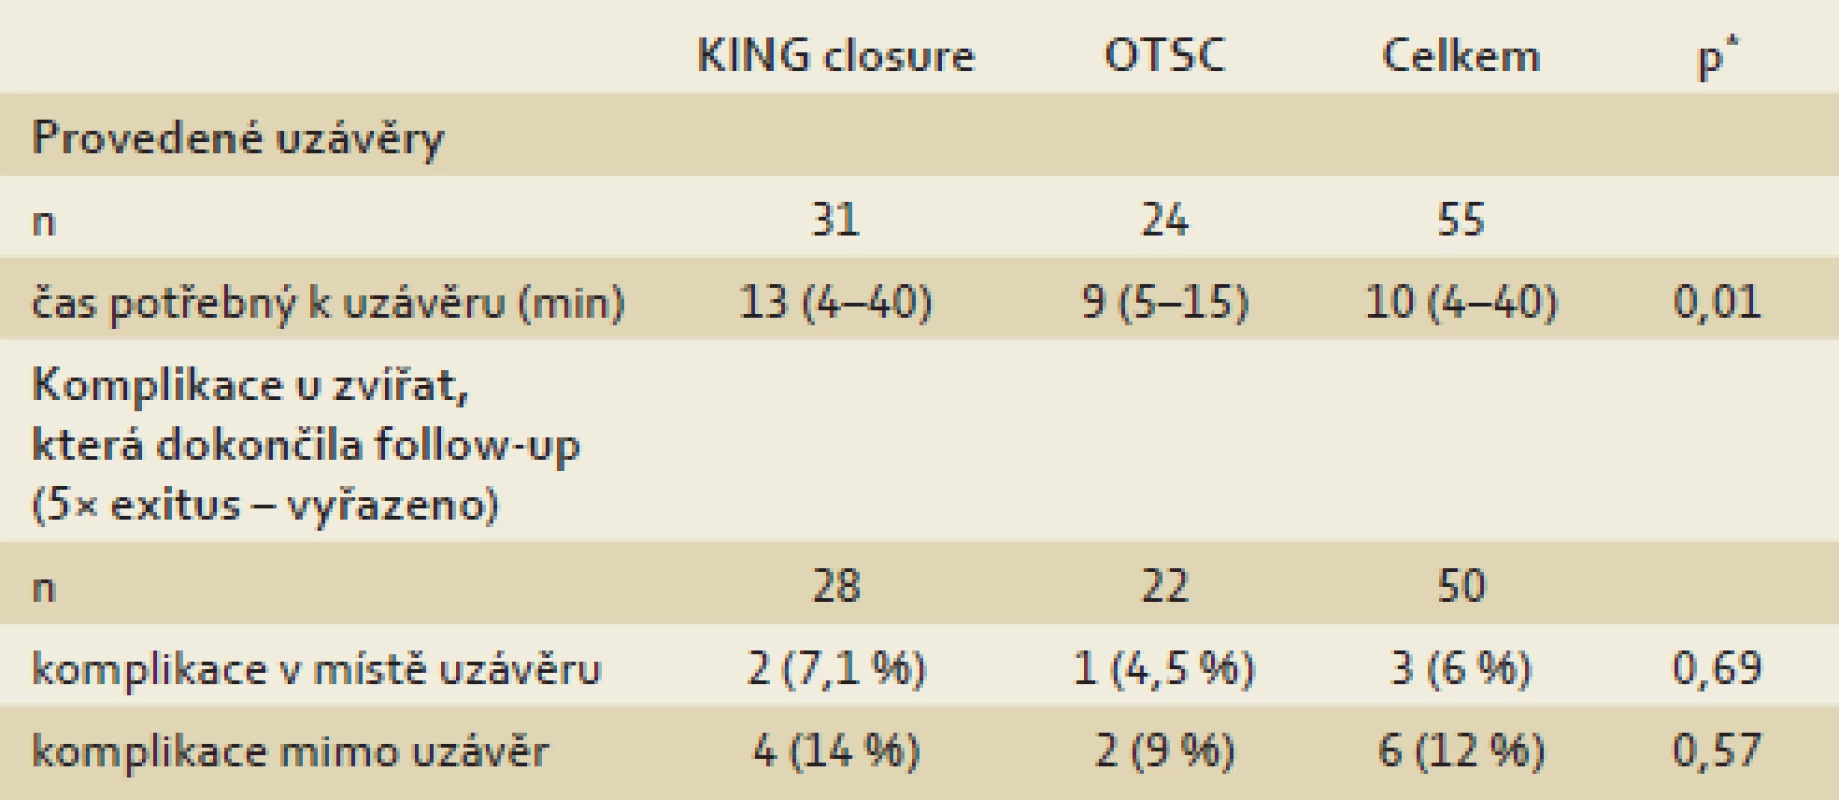 Výsledky KING a OTSC uzávěrů.
Tab. 2. Results of KING and OTSC closures.